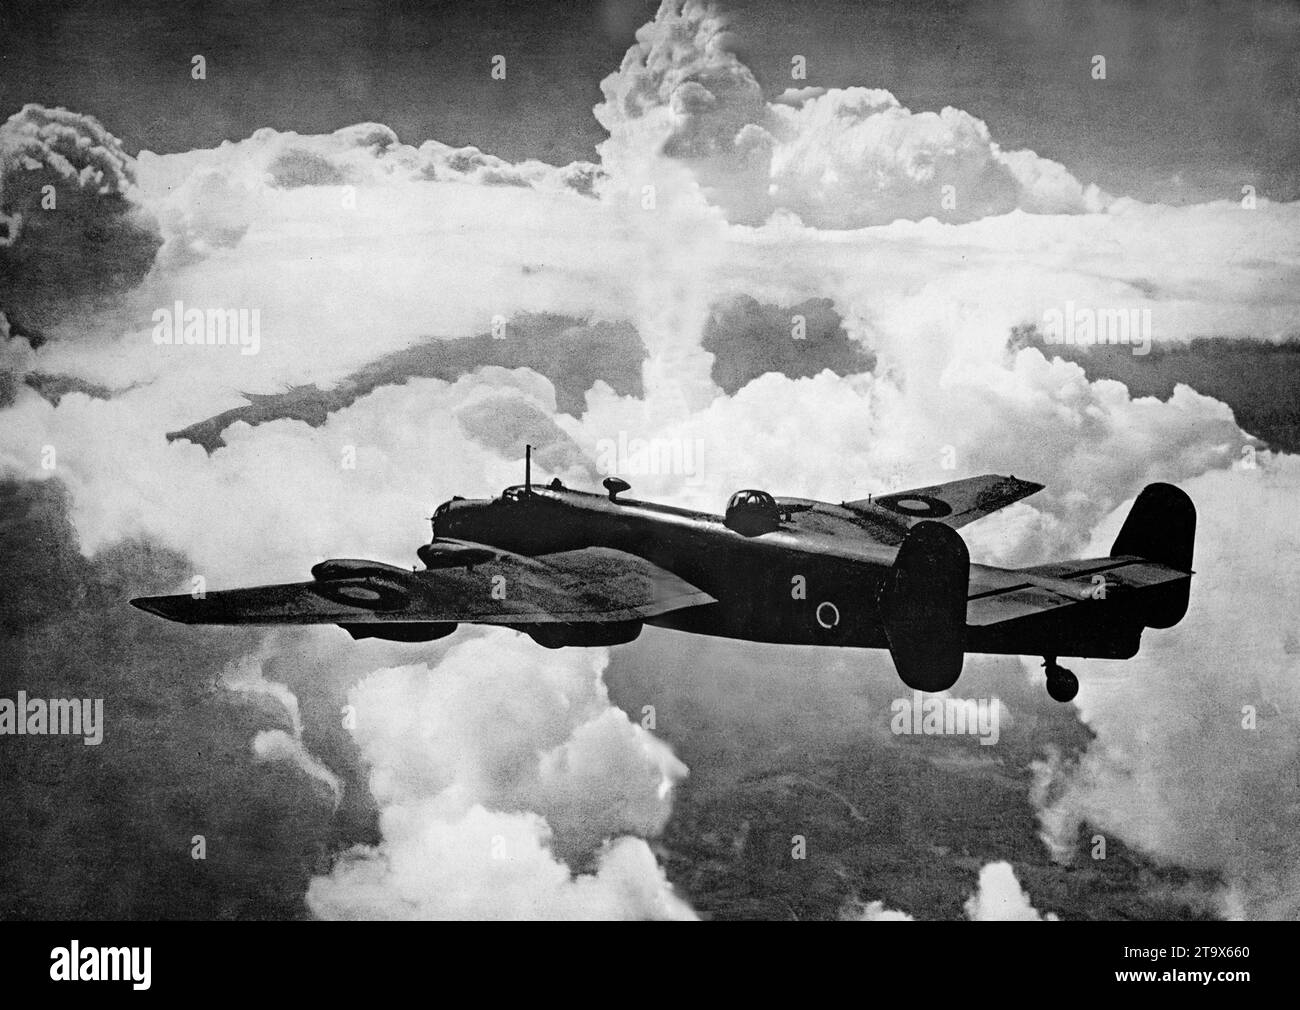 Un Avro Lancaster, bombardiere pesante britannico della seconda guerra mondiale in volo. È stato progettato e fabbricato da Avro come un contemporaneo dell'Handley Page Halifax, entrambi i bombardieri sono stati sviluppati secondo le stesse specifiche, così come lo Short Stirling, tutti e tre gli aerei erano bombardieri pesanti a quattro motori adottati dalla Royal Air Force durante la seconda guerra mondiale dopo la sua introduzione nel febbraio 1942. Foto Stock